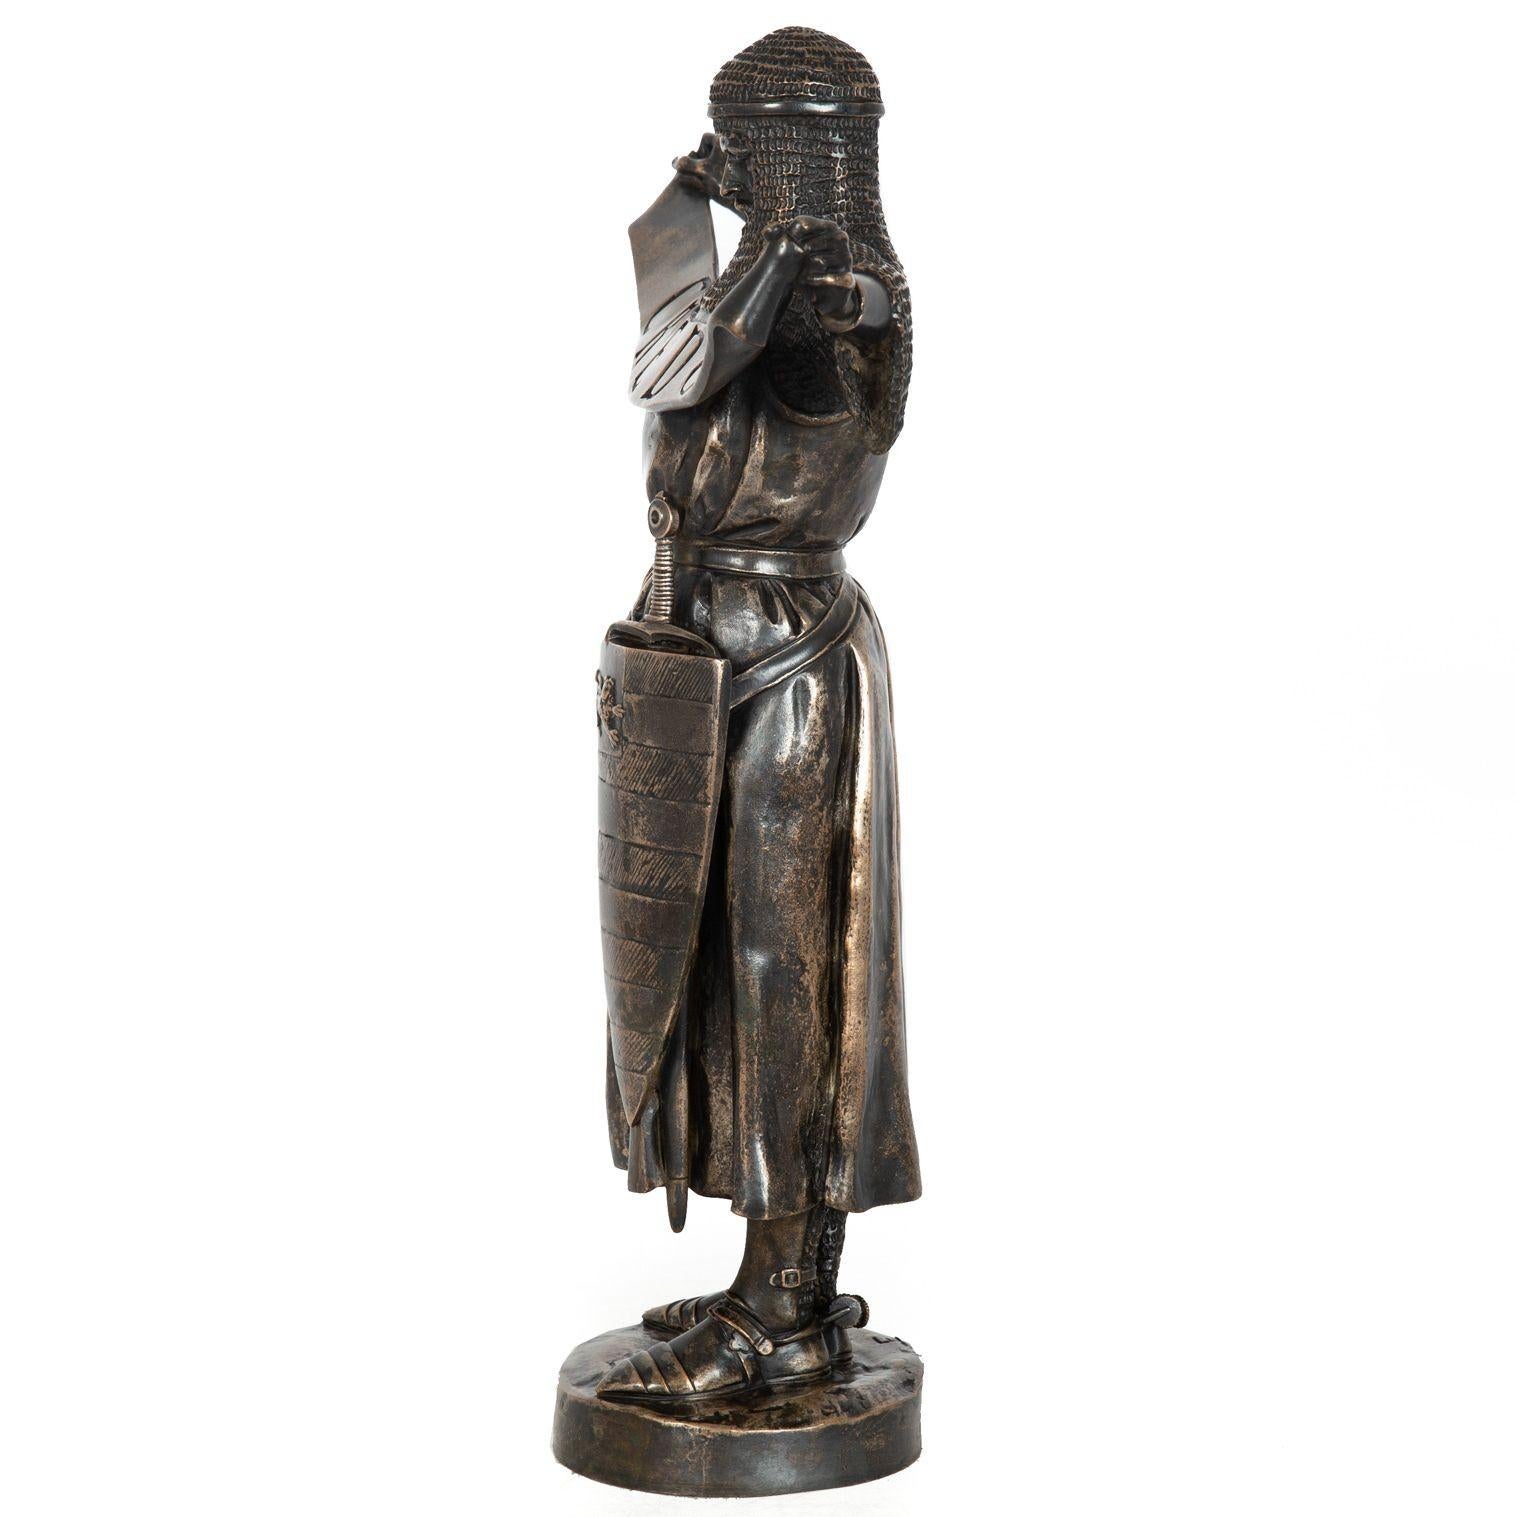 Romantic Rare French Antique Bronze Sculpture “Credo” by Emmanuel Fremiet